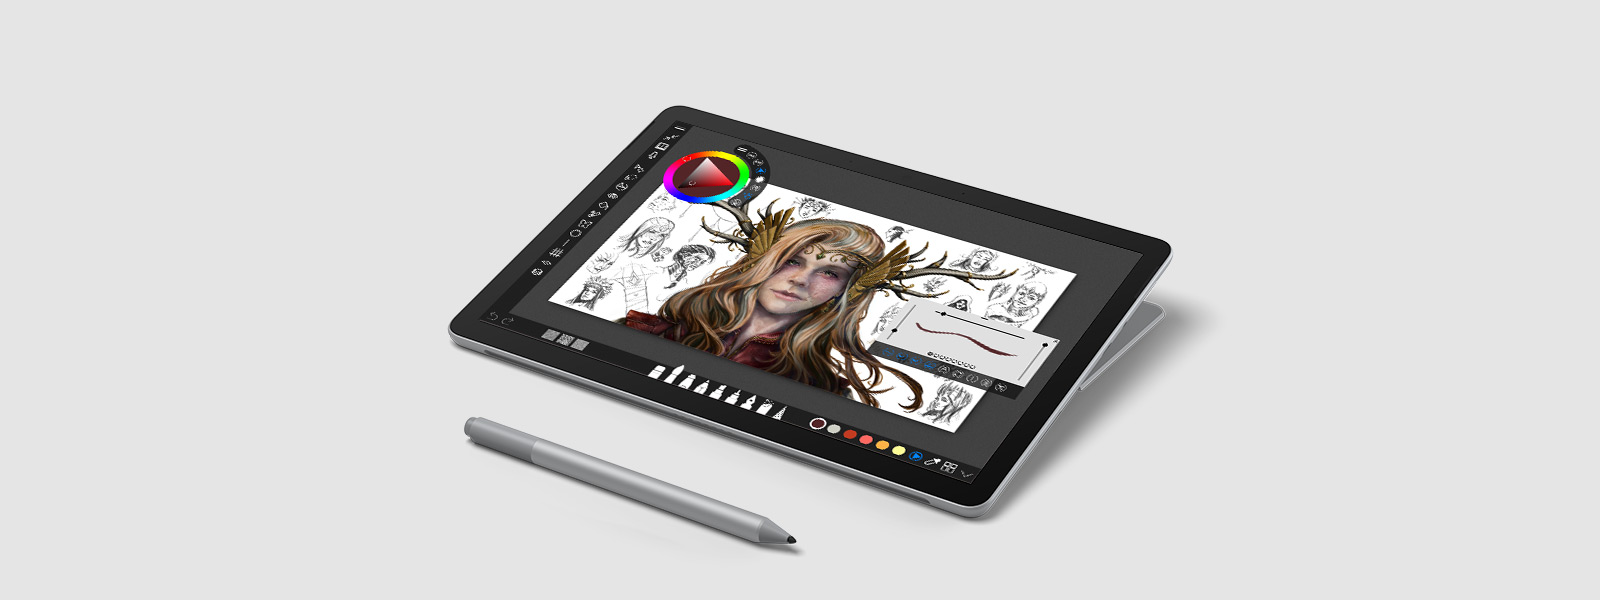 Memperkenalkan Surface Go 2 u2013 Semestinya mudah alih u2013 Microsoft 